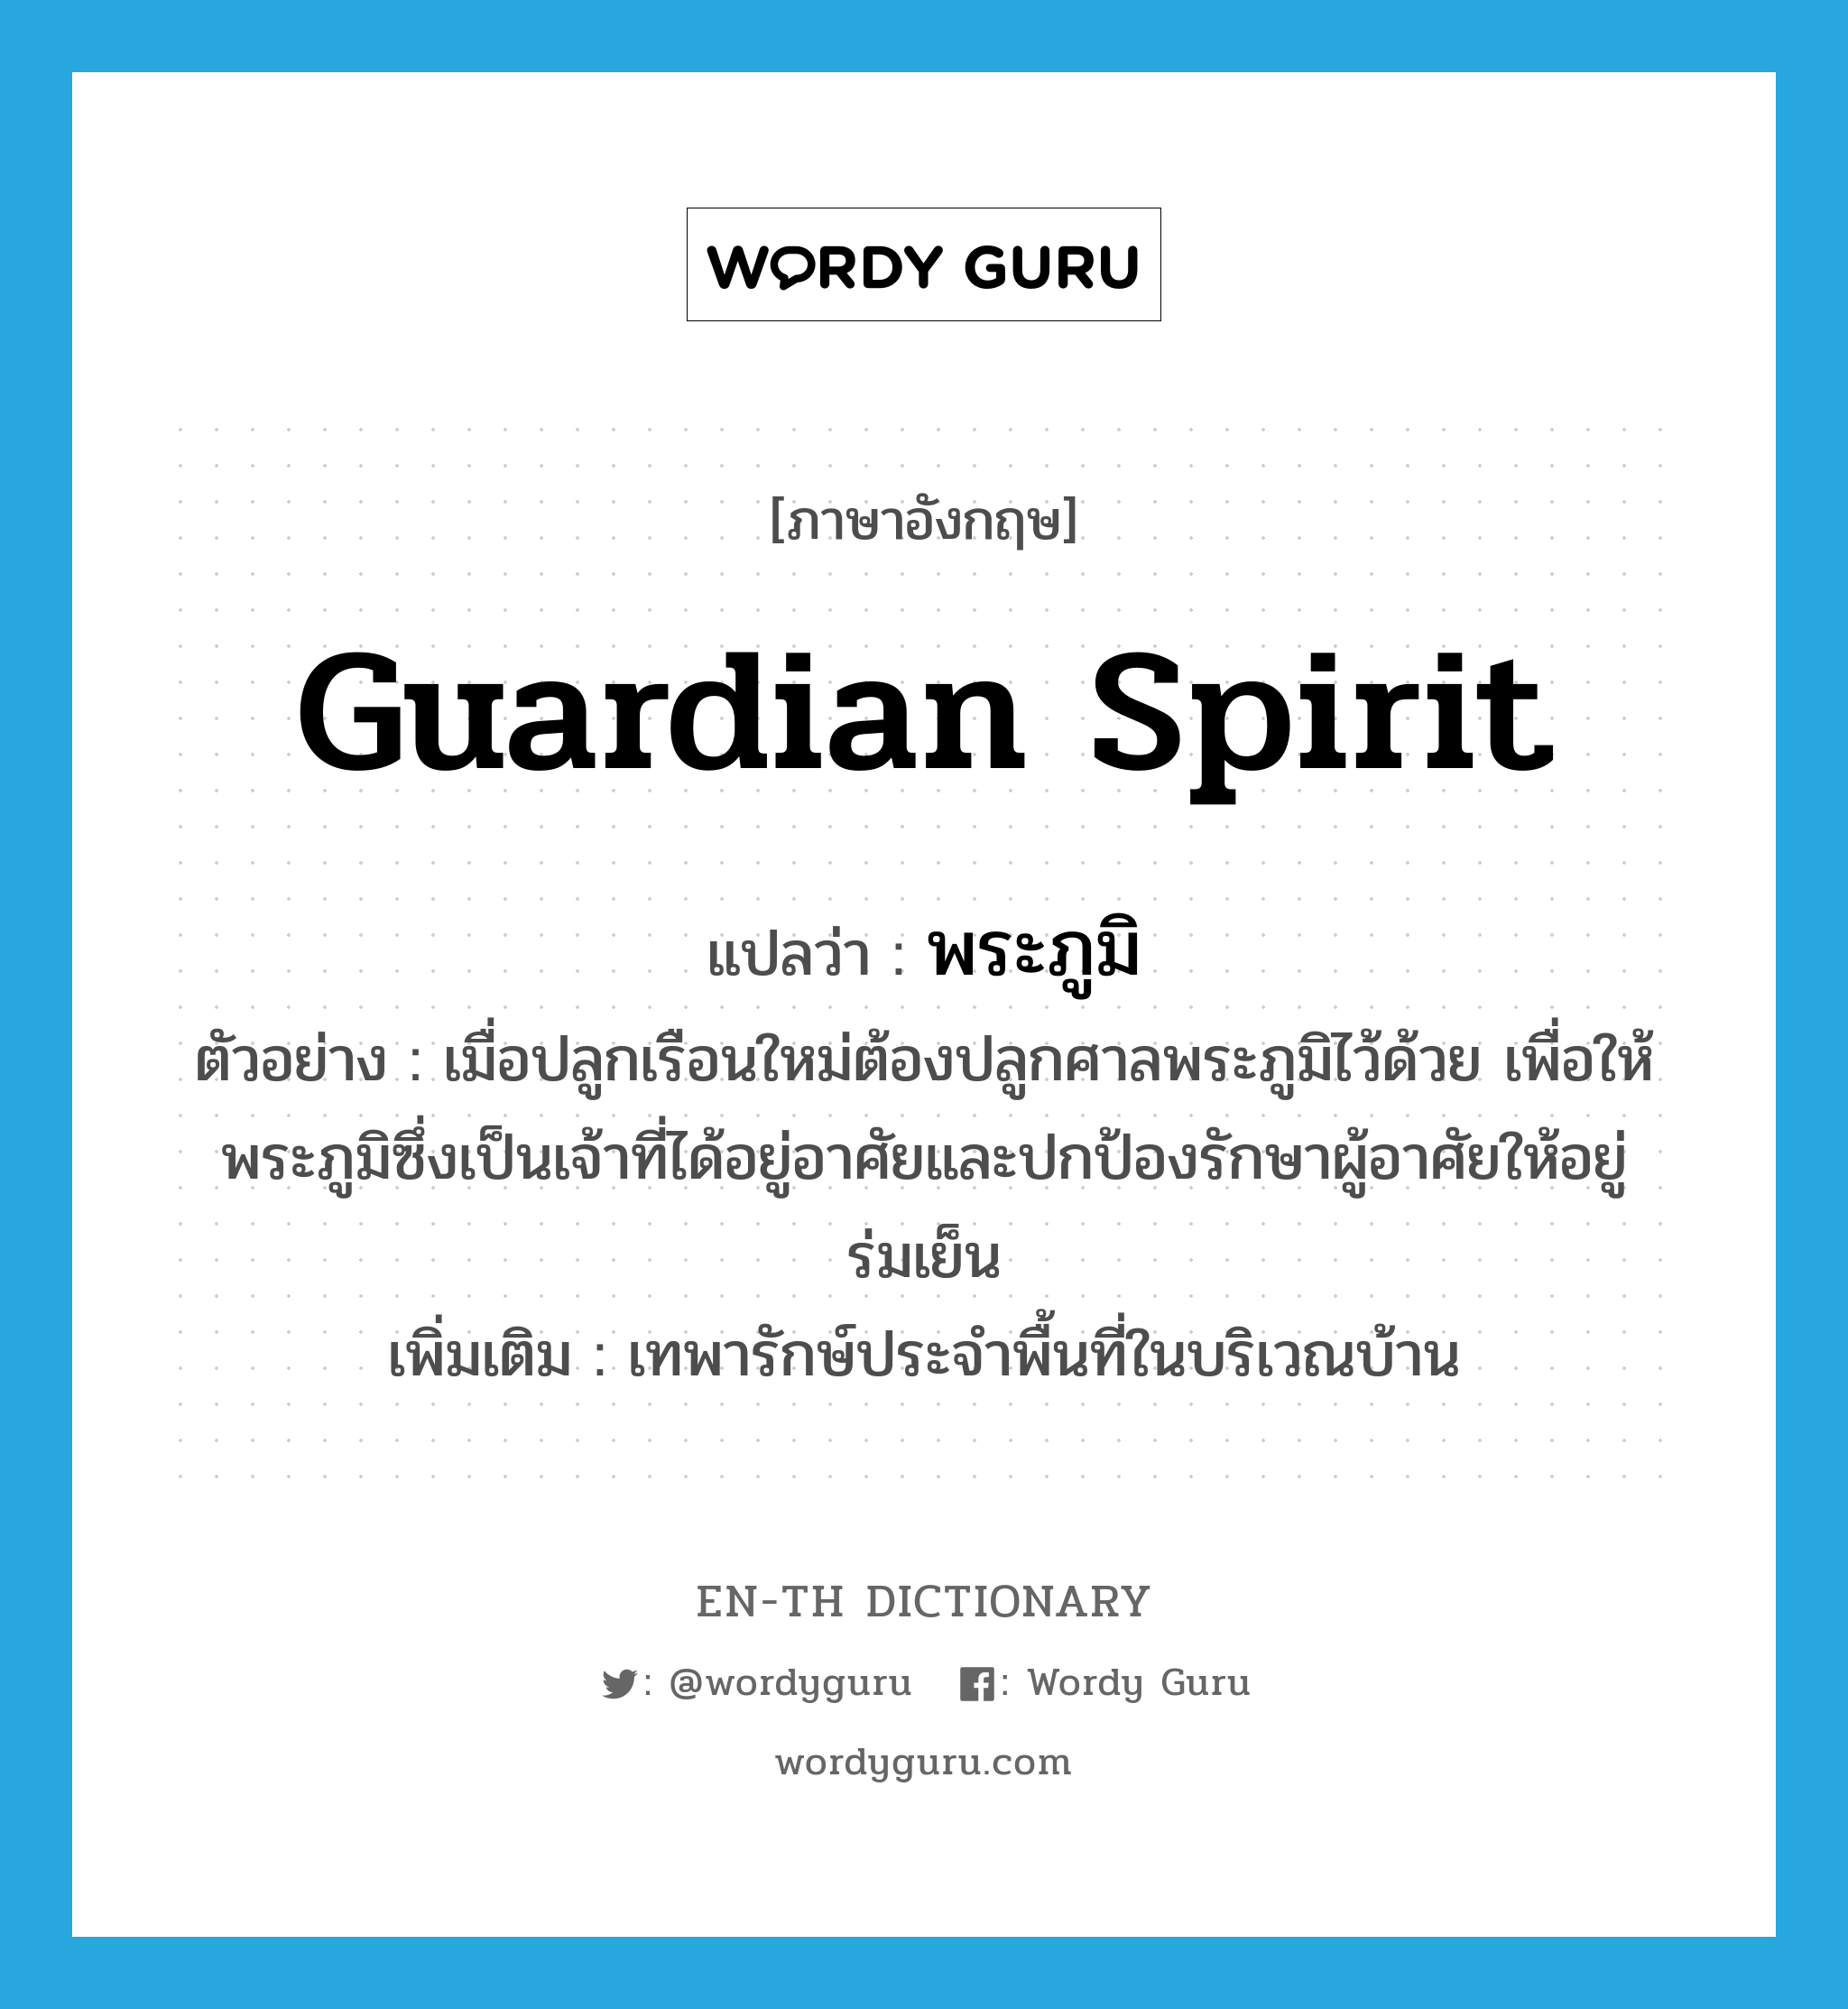 guardian spirit แปลว่า?, คำศัพท์ภาษาอังกฤษ guardian spirit แปลว่า พระภูมิ ประเภท N ตัวอย่าง เมื่อปลูกเรือนใหม่ต้องปลูกศาลพระภูมิไว้ด้วย เพื่อให้พระภูมิซึ่งเป็นเจ้าที่ได้อยู่อาศัยและปกป้องรักษาผู้อาศัยให้อยู่ร่มเย็น เพิ่มเติม เทพารักษ์ประจำพื้นที่ในบริเวณบ้าน หมวด N